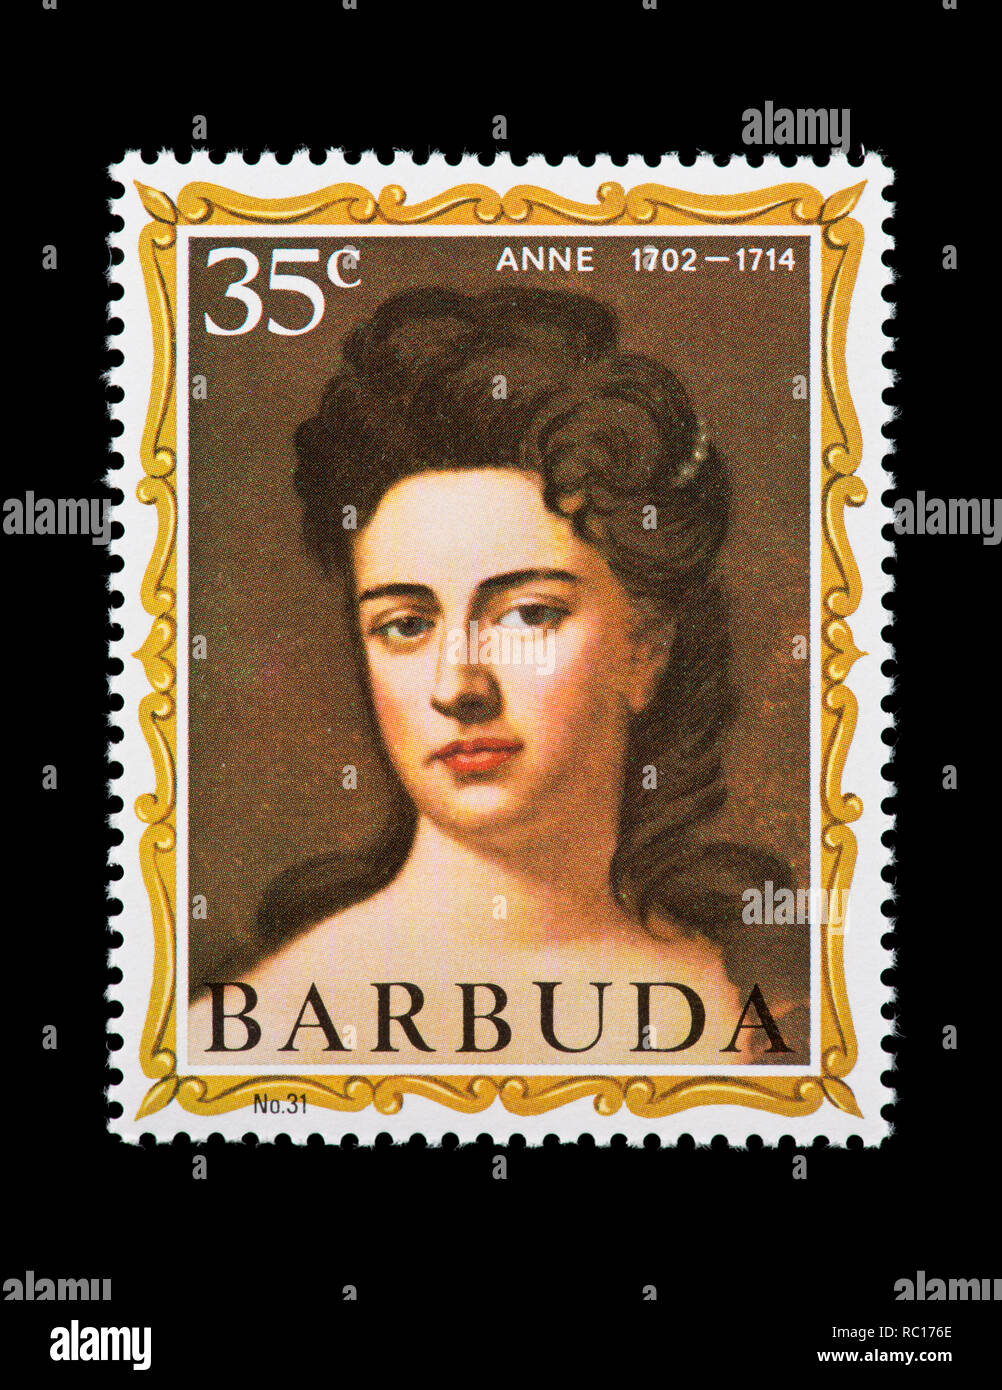 Timbre-poste pour Barbuda représentant Anne, formaer reine de Grande-Bretagne. Banque D'Images